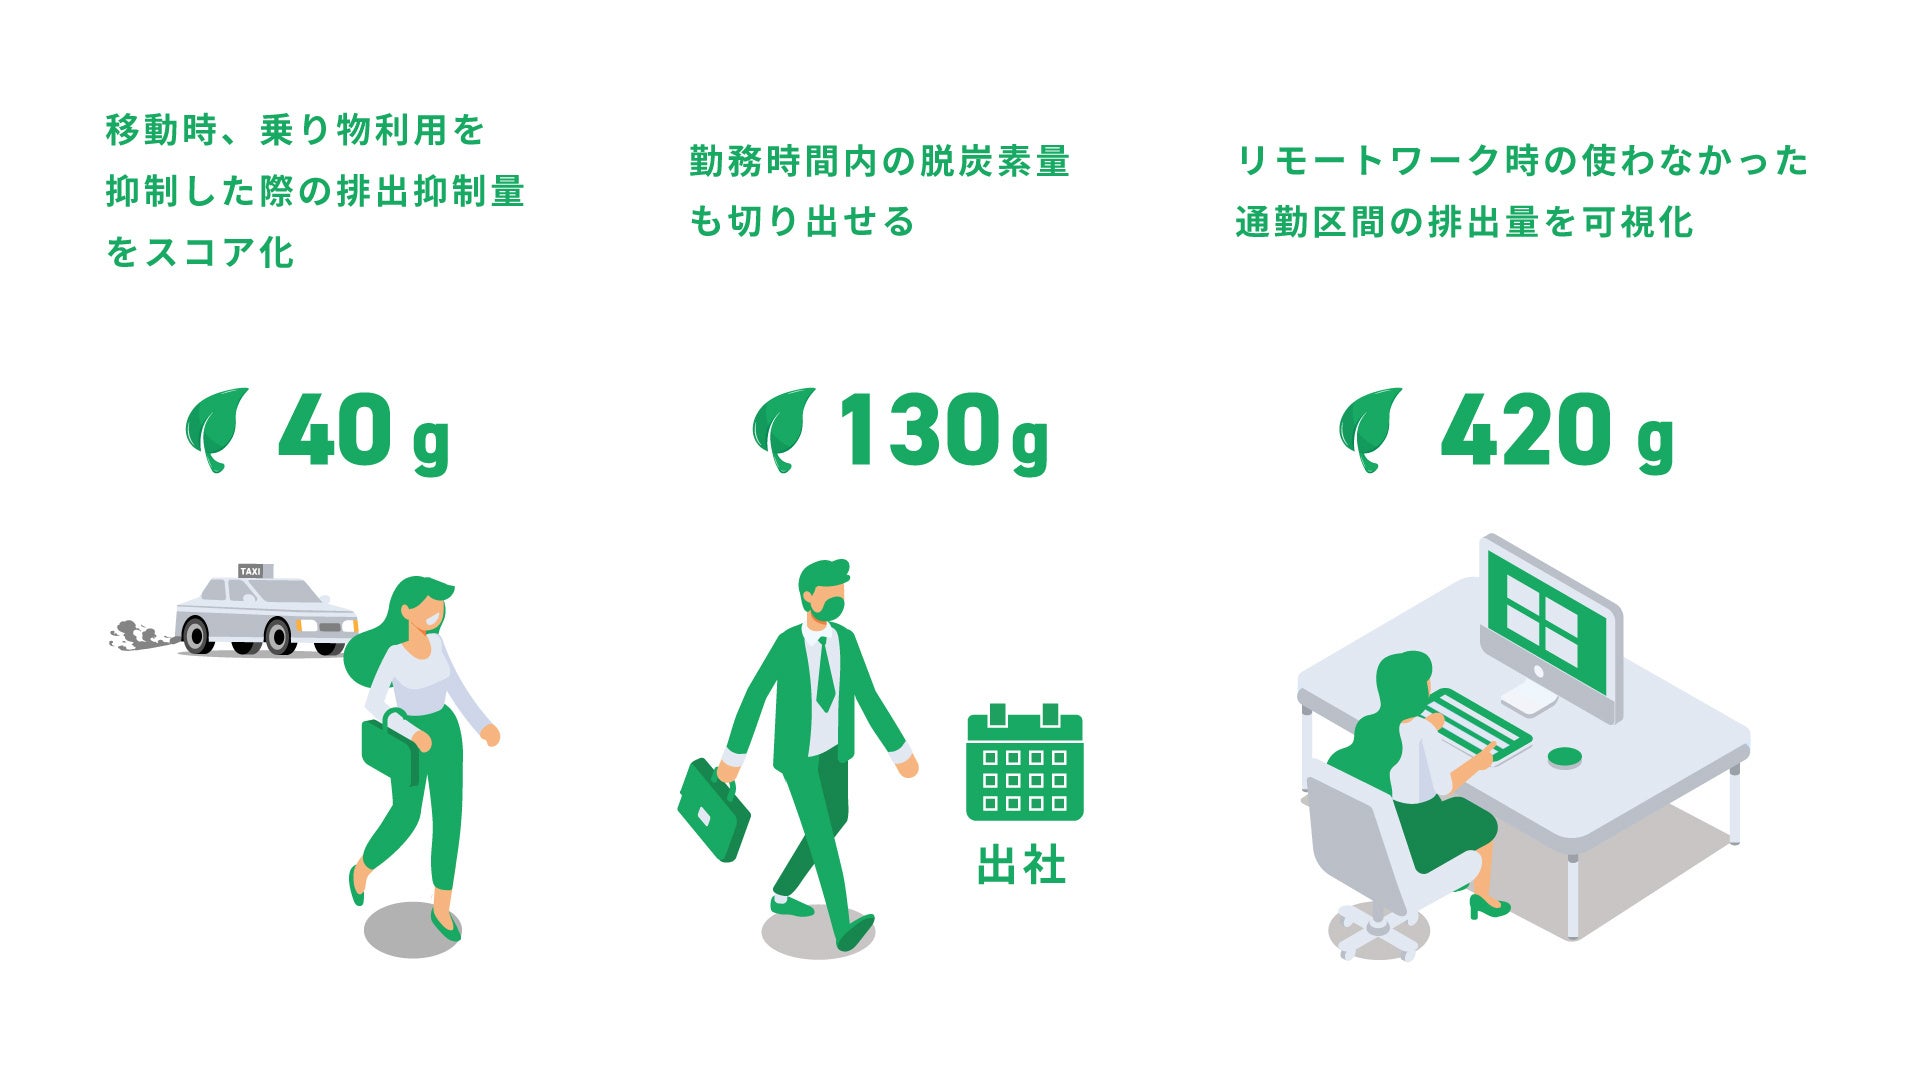 青森県弘前市 2ヶ月で一人あたり1,350歩/日の歩数増加、2.1tの脱炭素 / スマホアプリSPOBYのサブ画像2